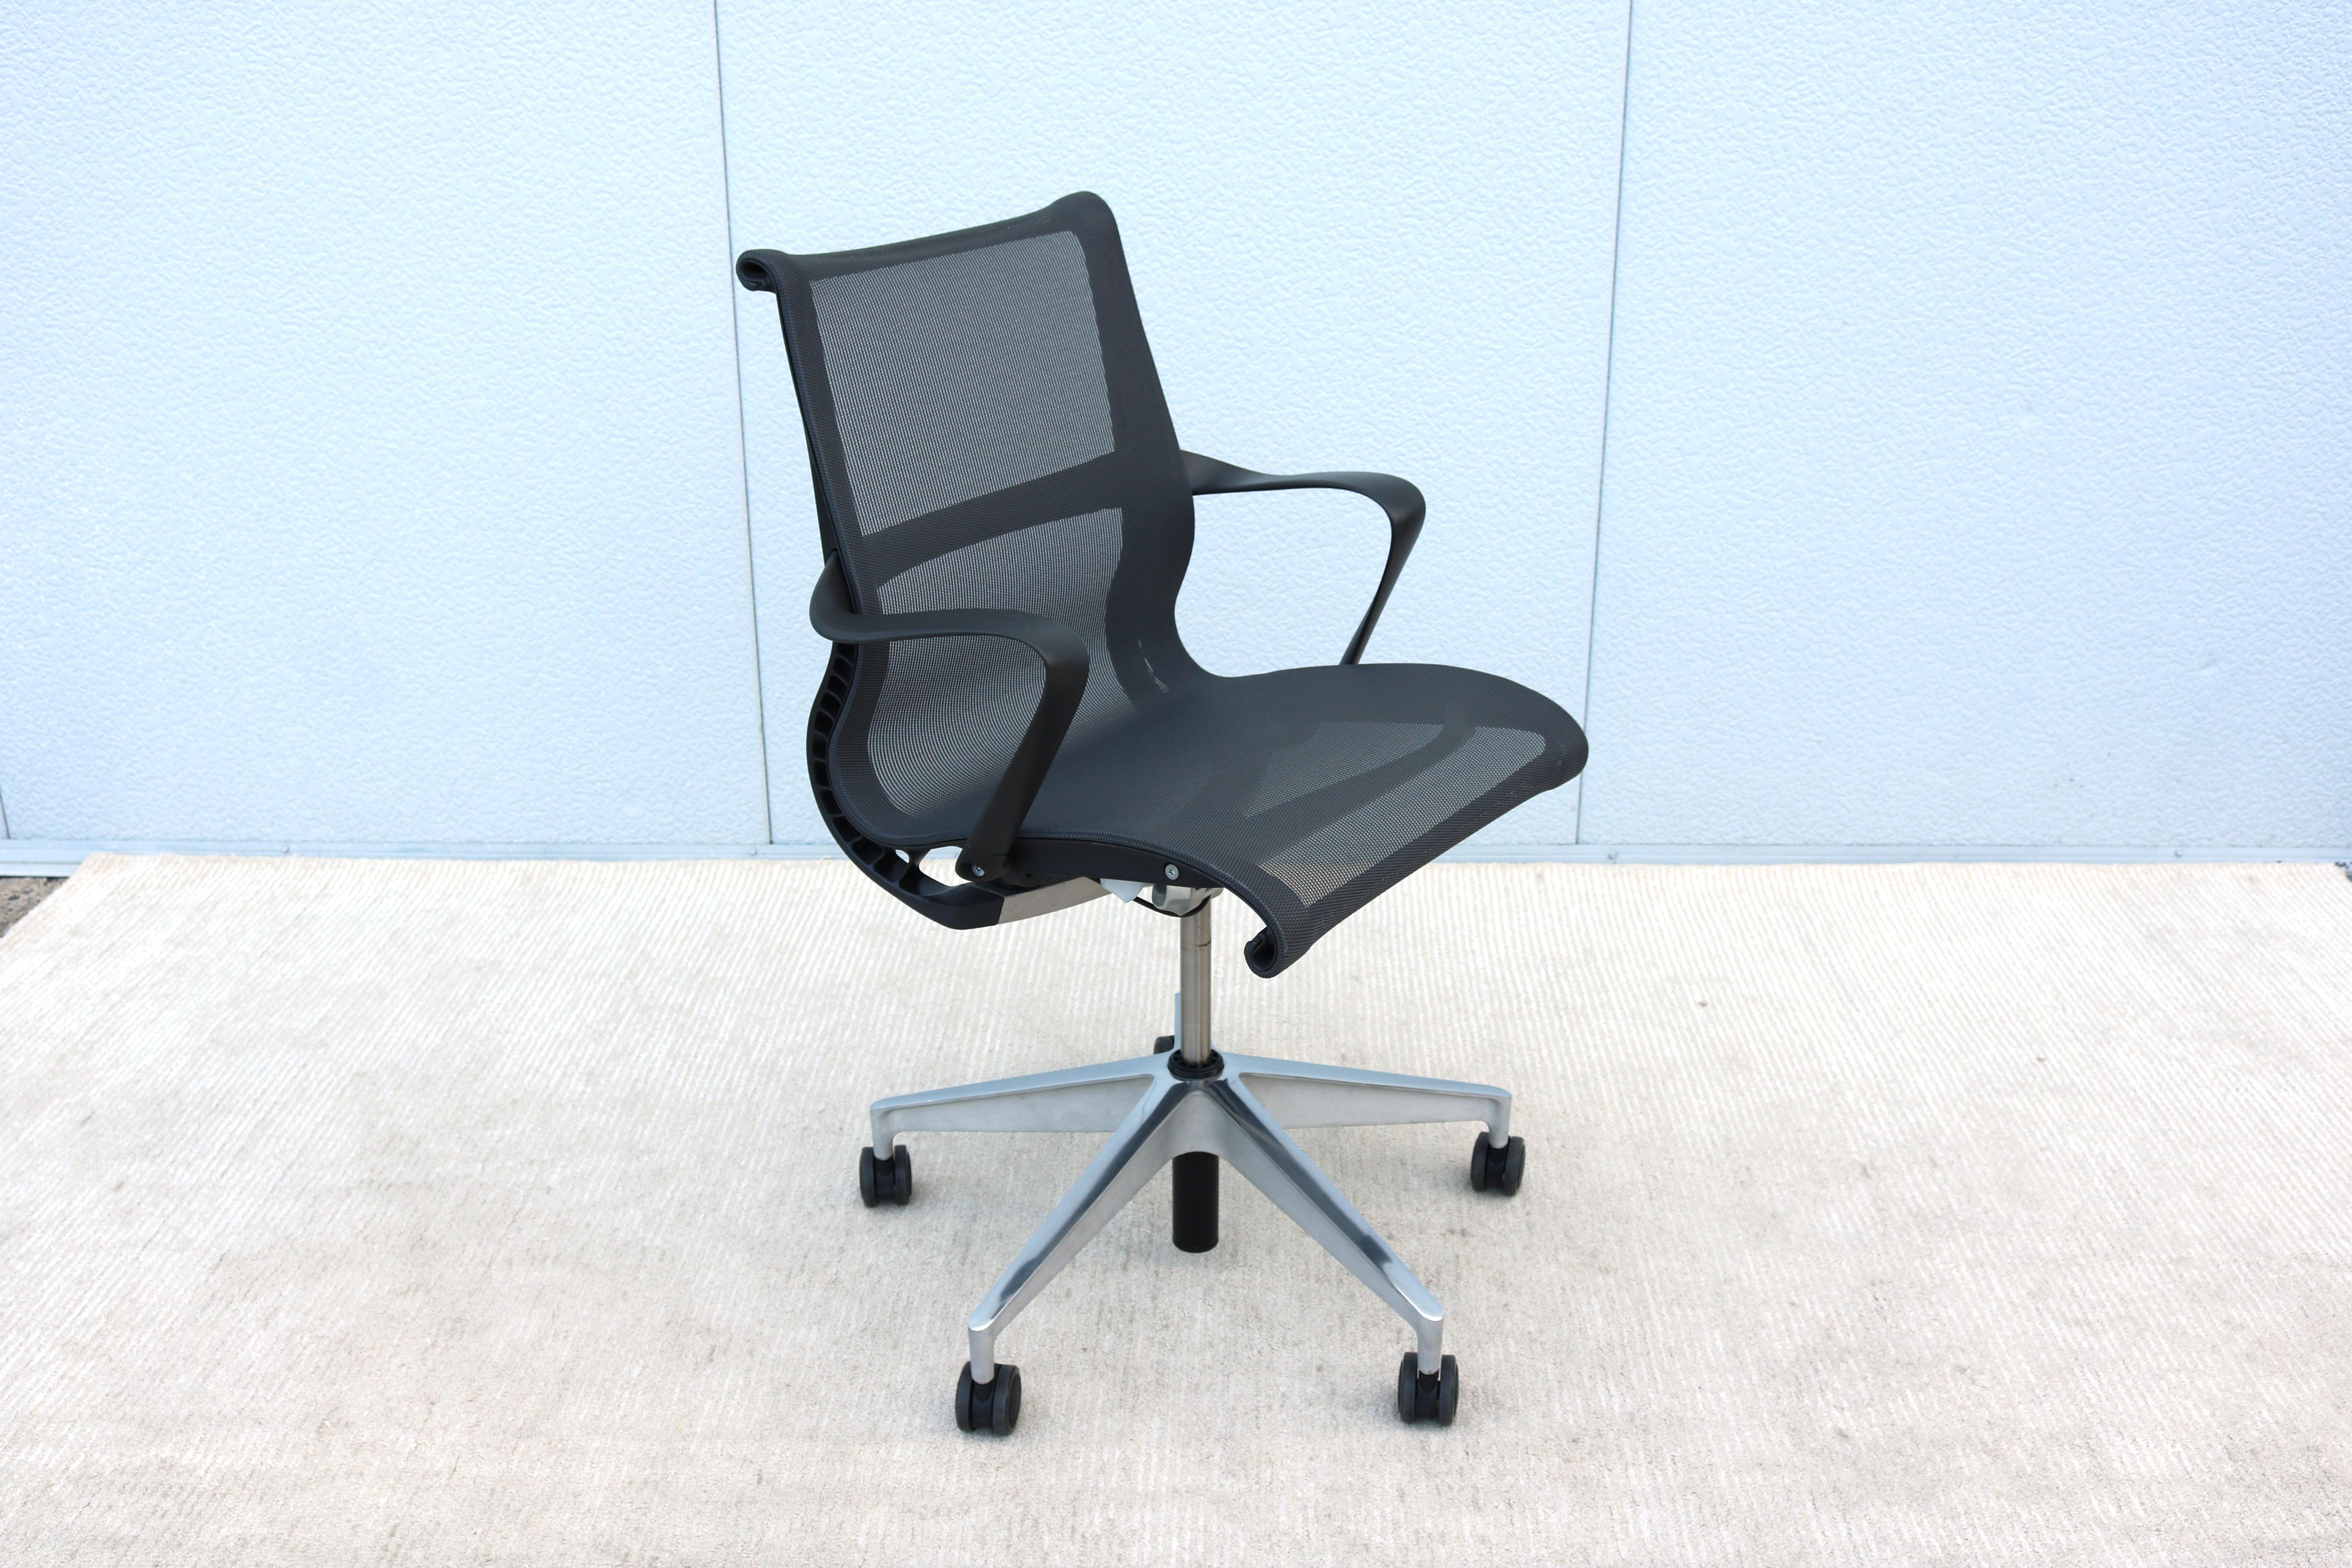 Der Setu-Stuhl bietet sofortigen Komfort für jeden, sobald man sich hinsetzt. Das Beste der NeoCon Gold 2009.
Einteilige Sitzfläche und Rückenlehne aus atmungsaktivem und biegsamem Netzgewebe, das sich dem Sitzenden anpasst und für Komfort und